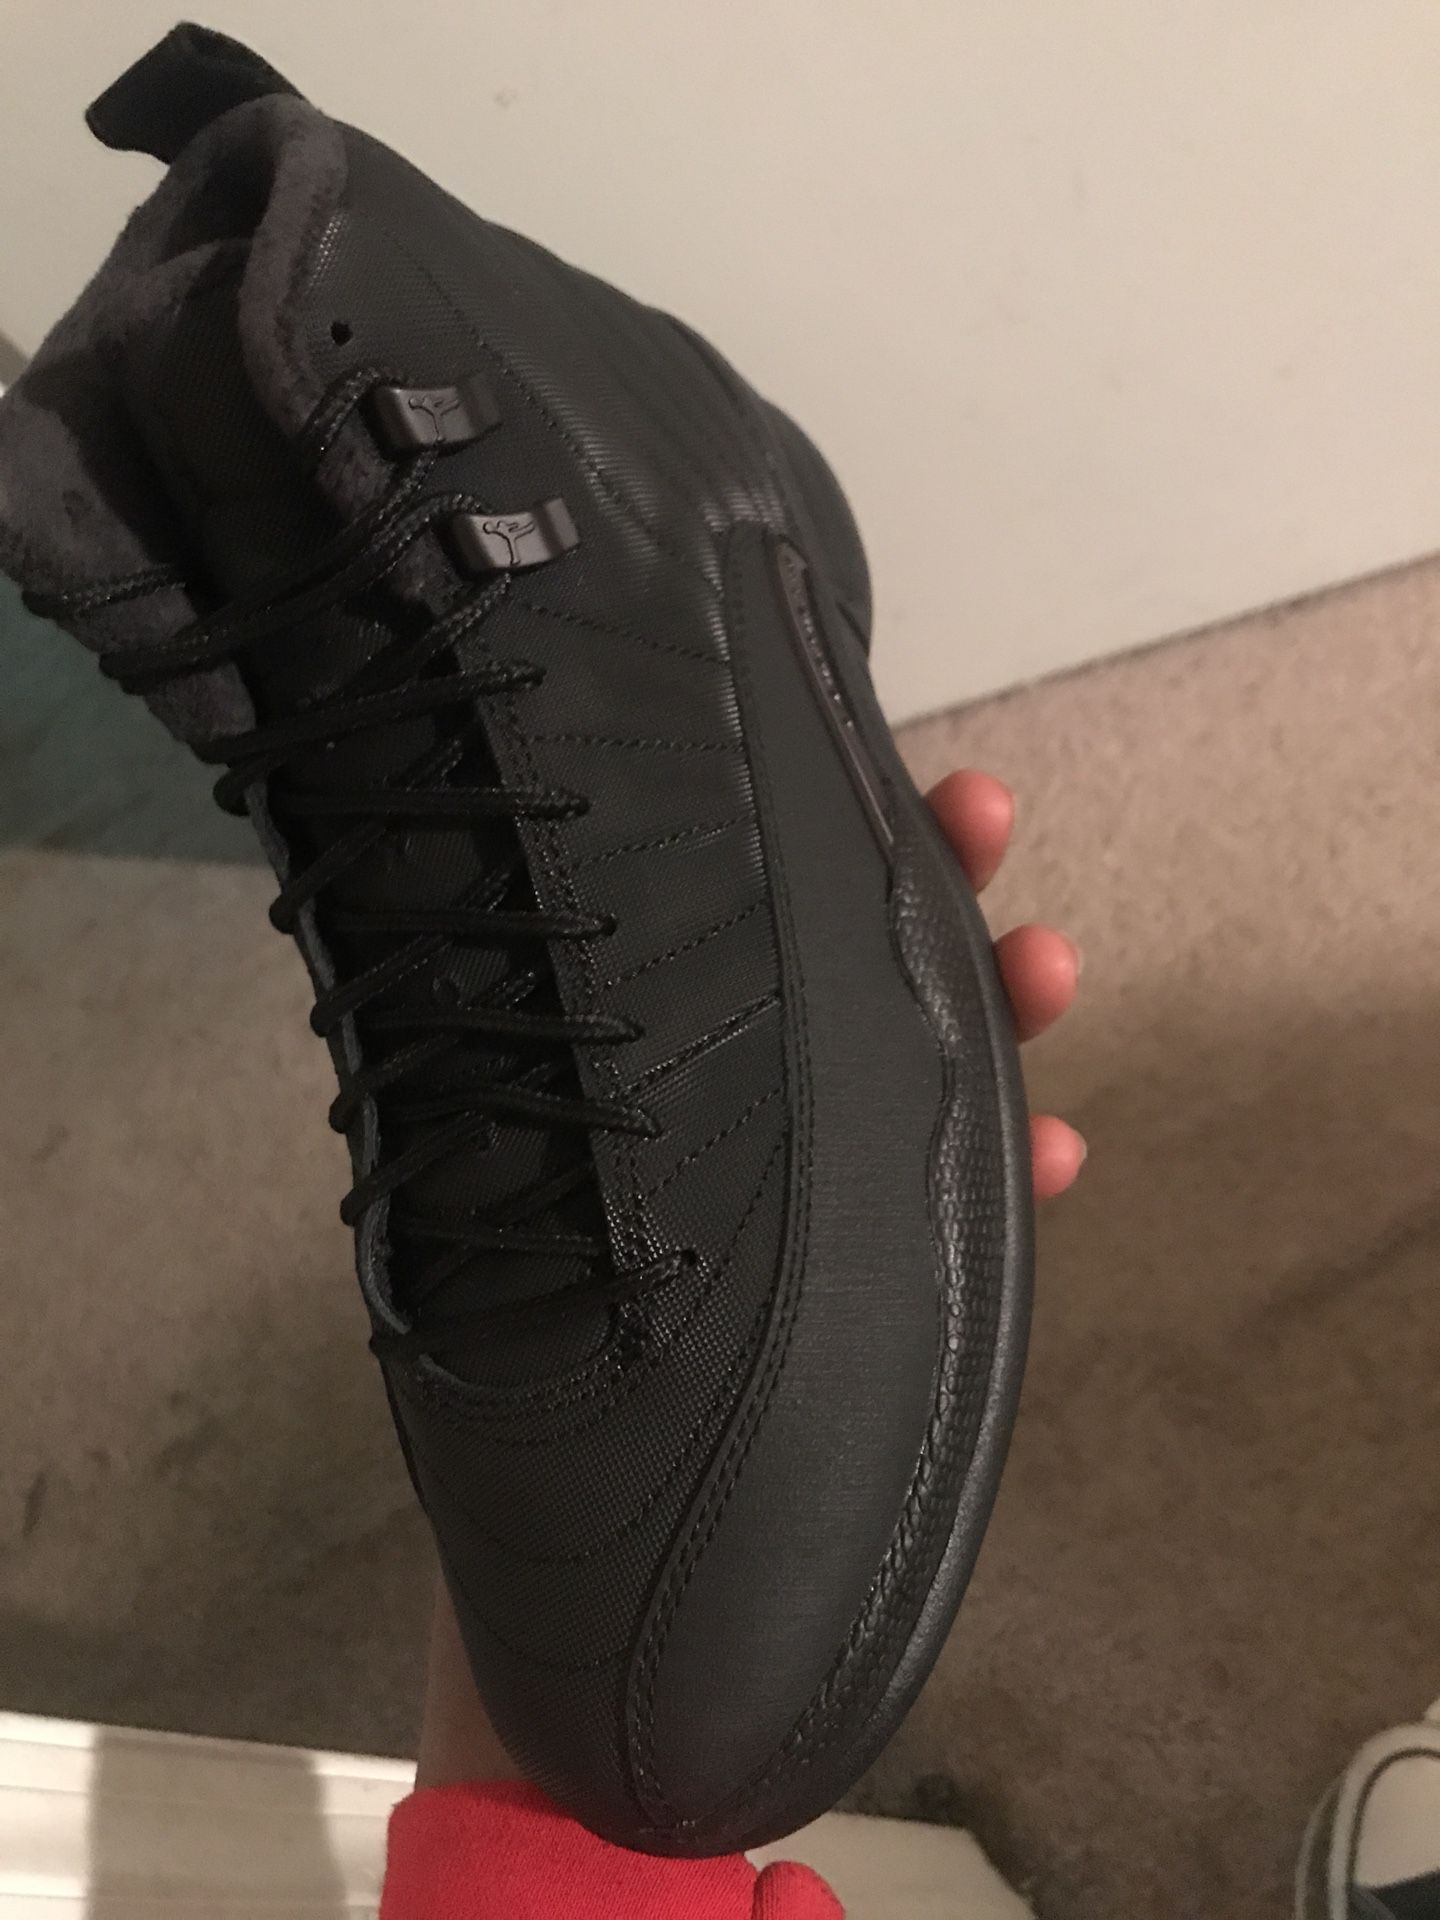 All black Jordan’s size 8 brand new going for 400$